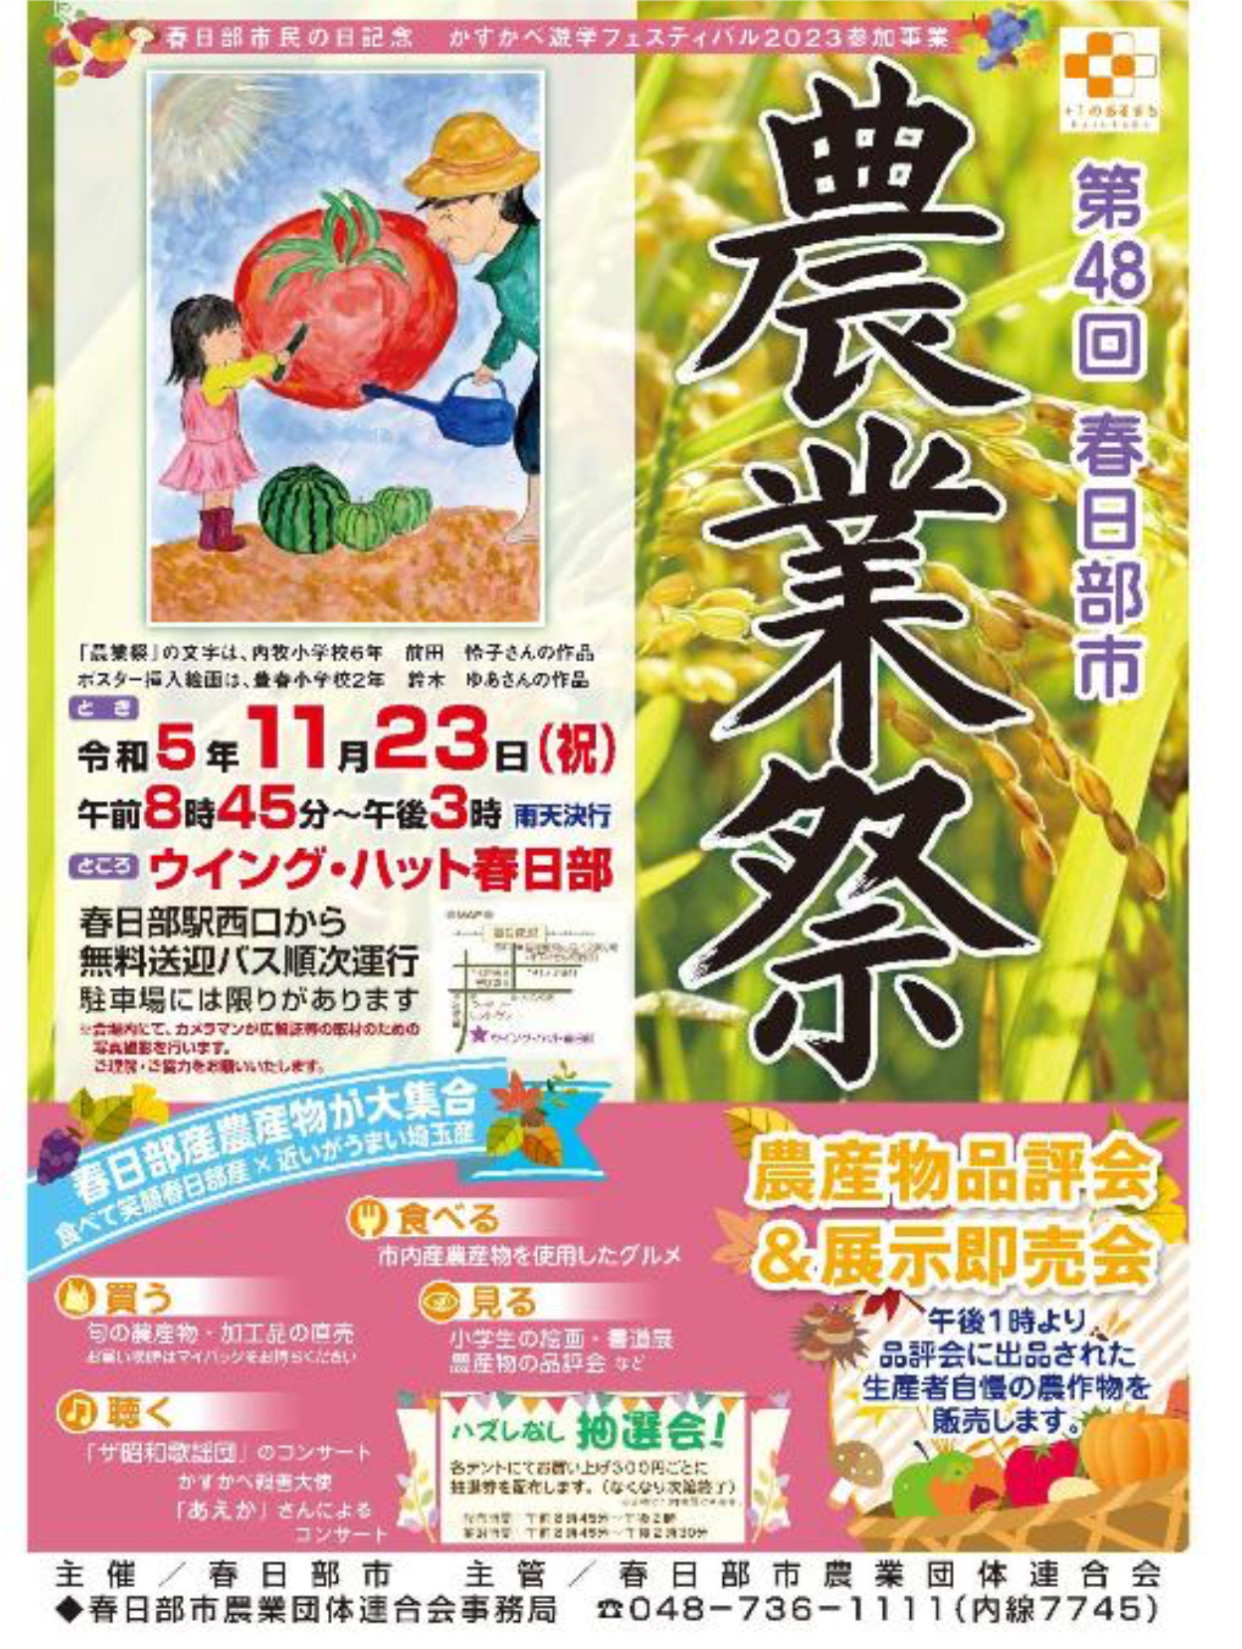 11月23日春日部農業祭に出店します。